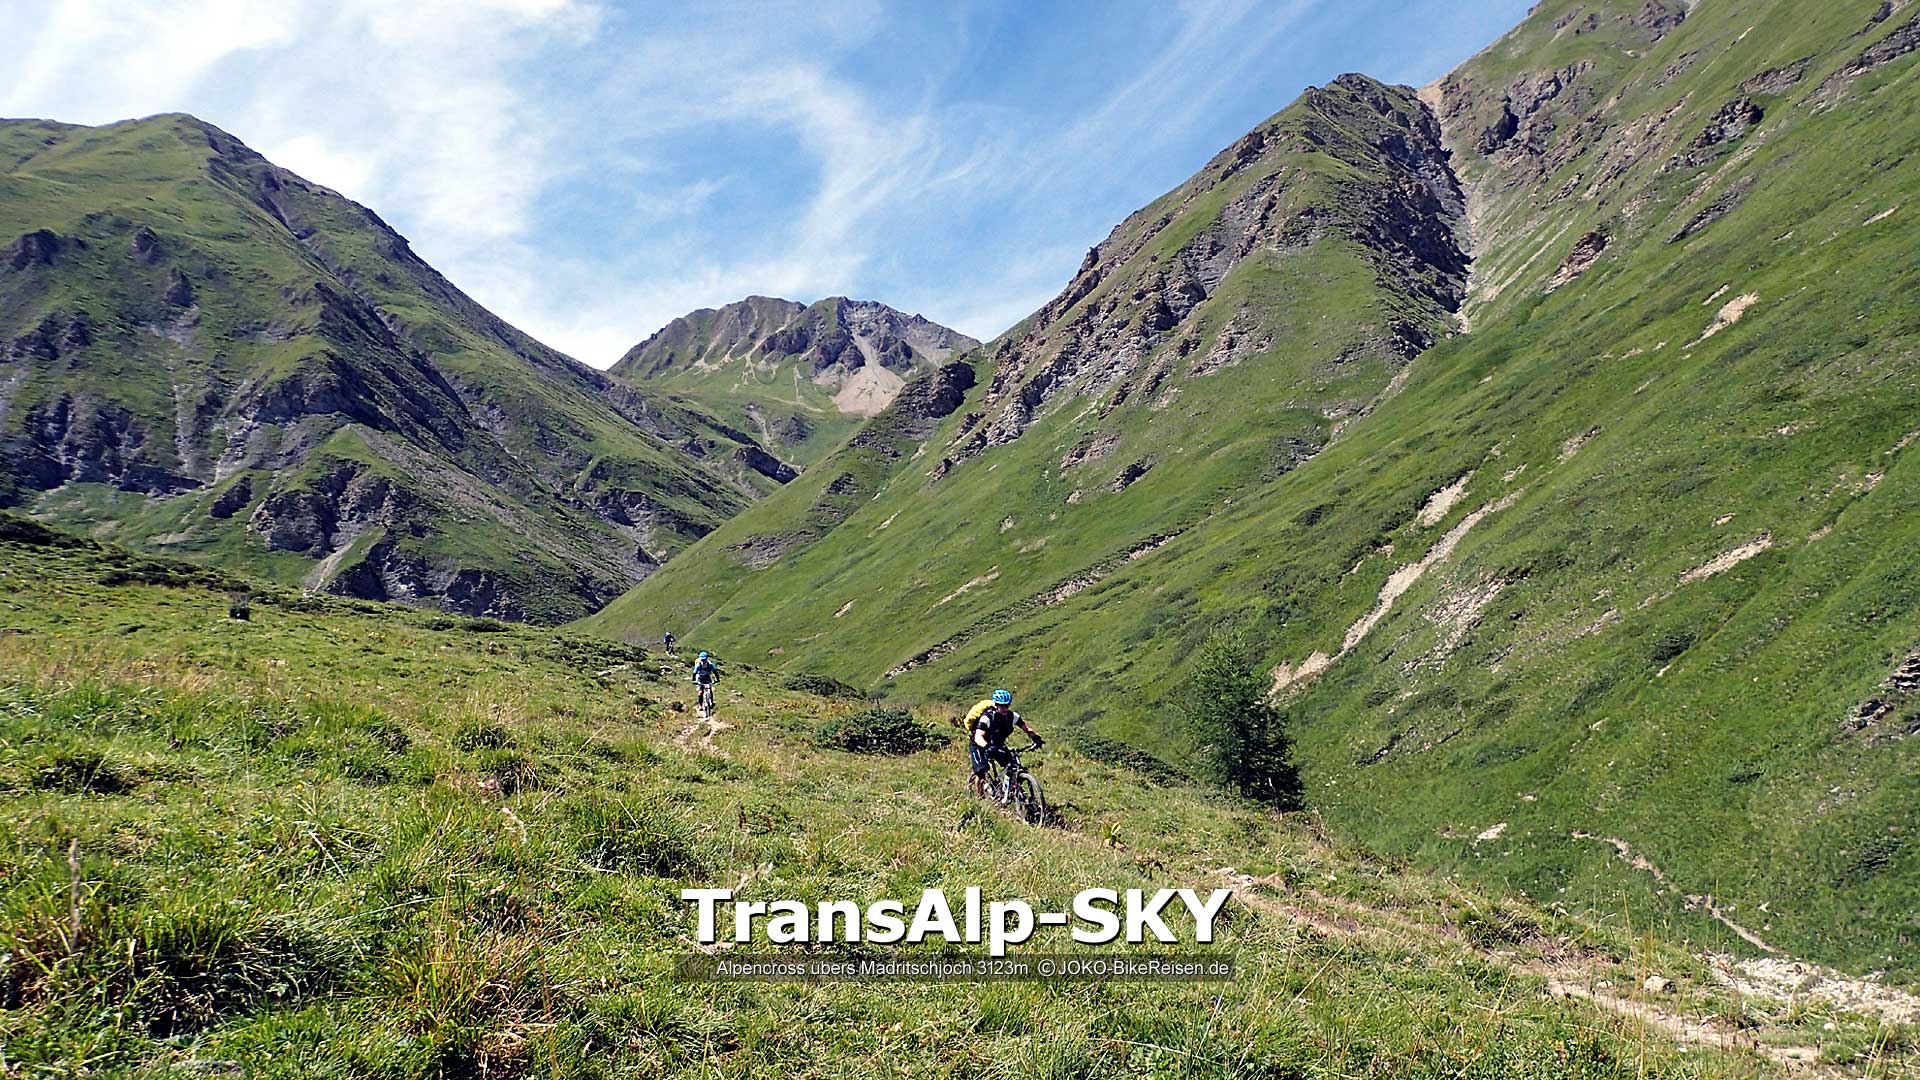 Mountainbike-Alpenüberquerung übers Madrischjoch, durch Uina-Schlucht zum Gardasee/Riva